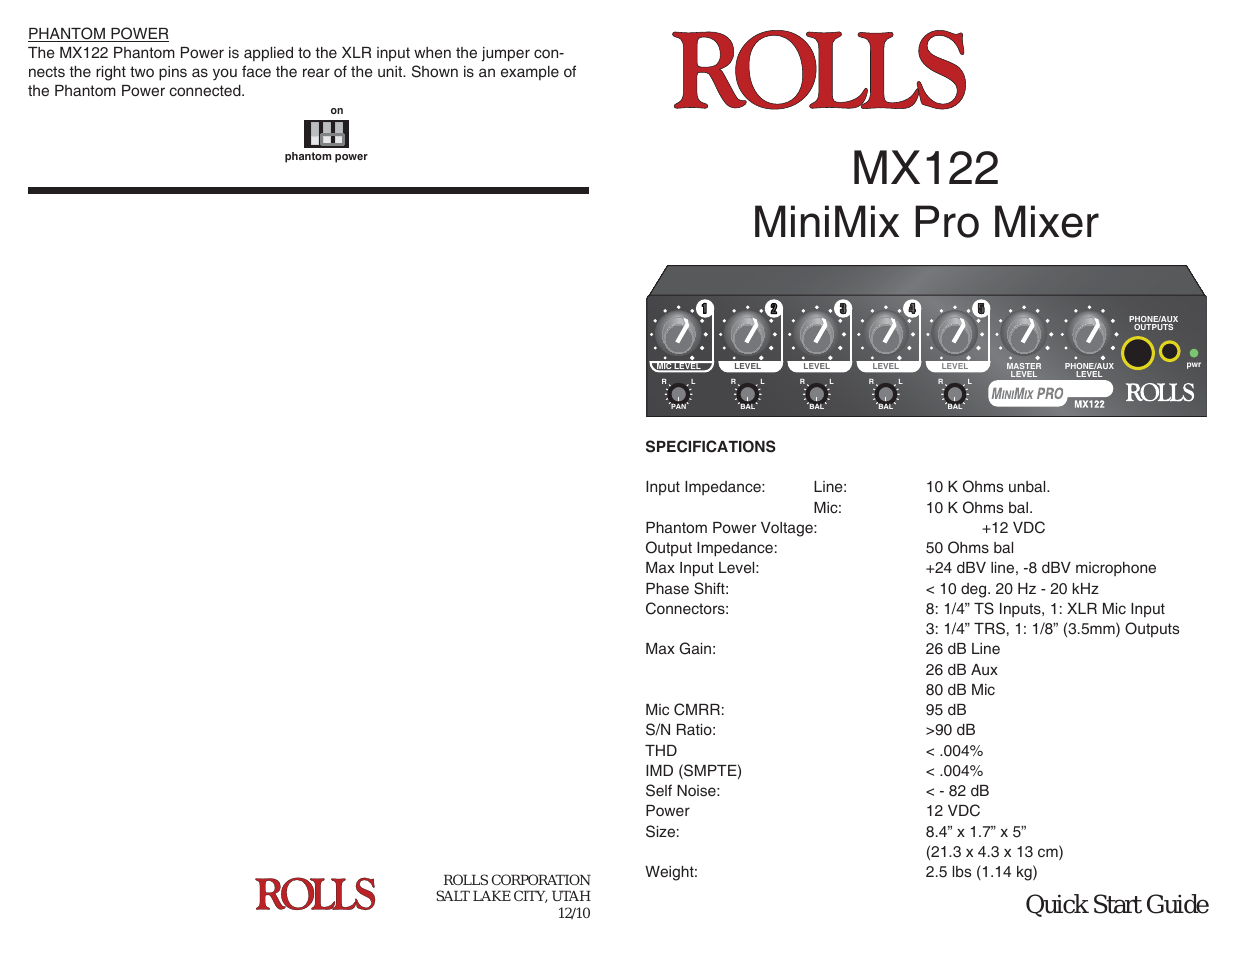 MINIMIX MX122